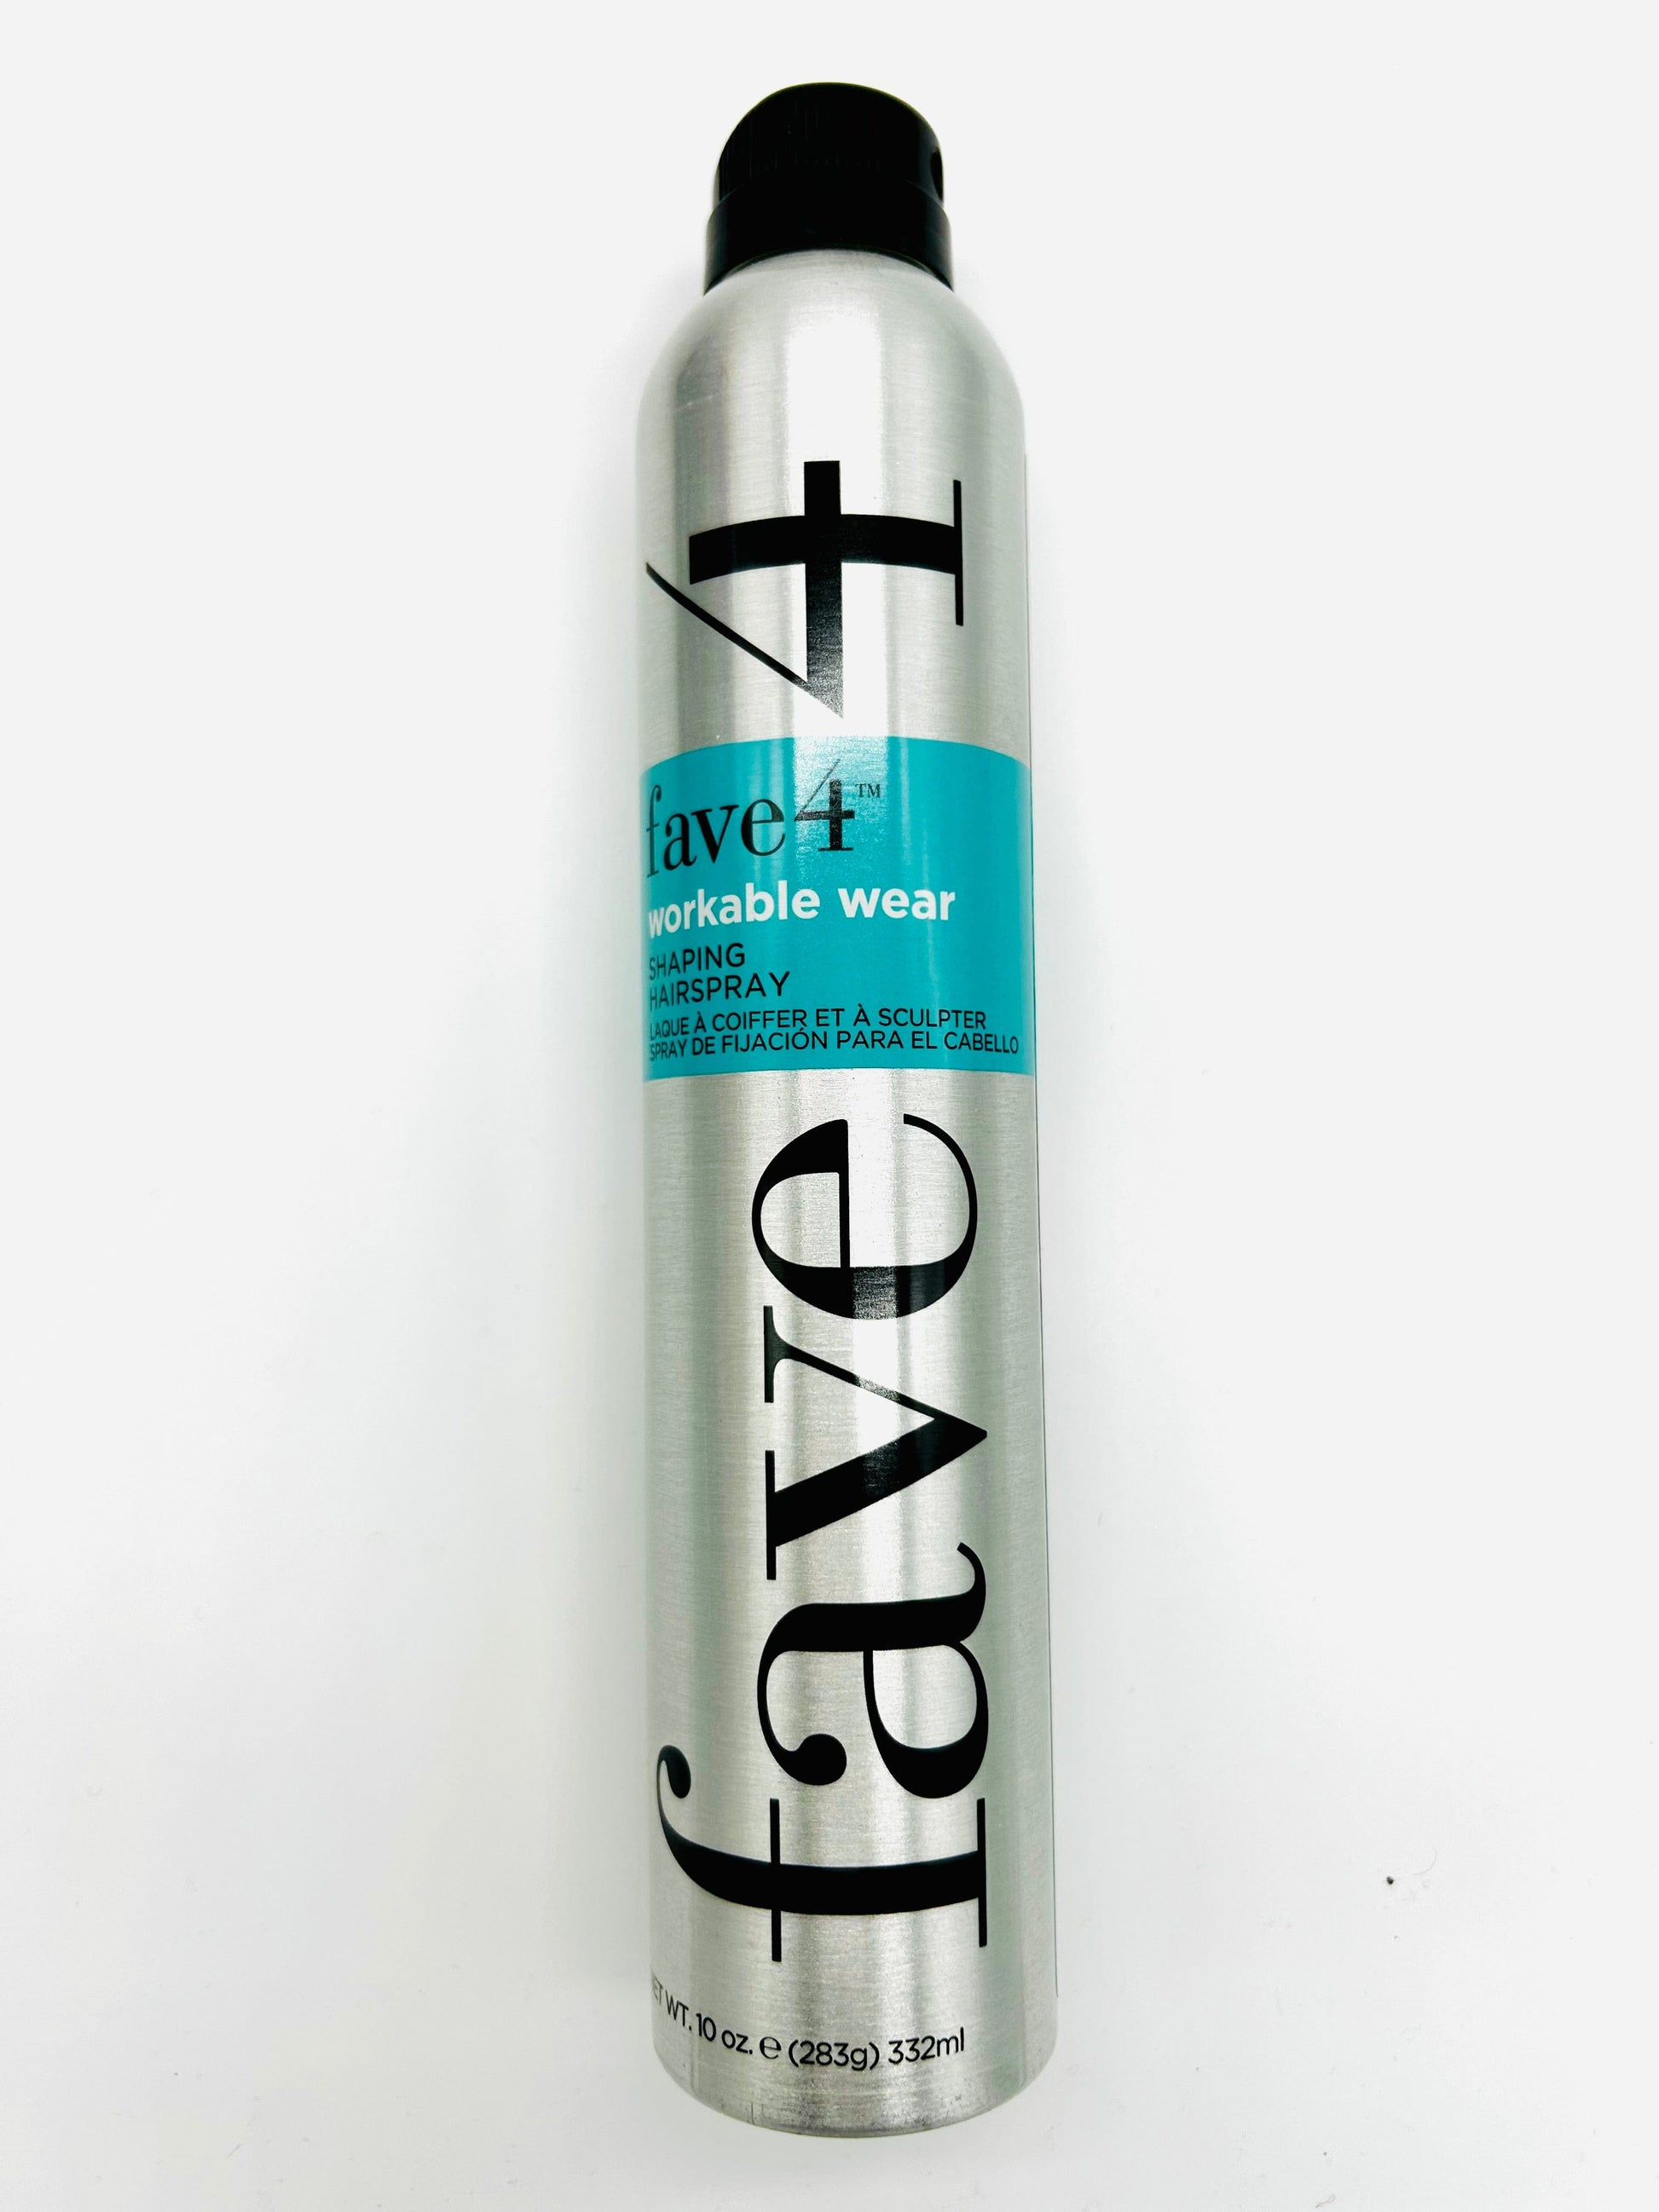 Fave4 Workable Wear Hair Spray 10 oz Hair Spray